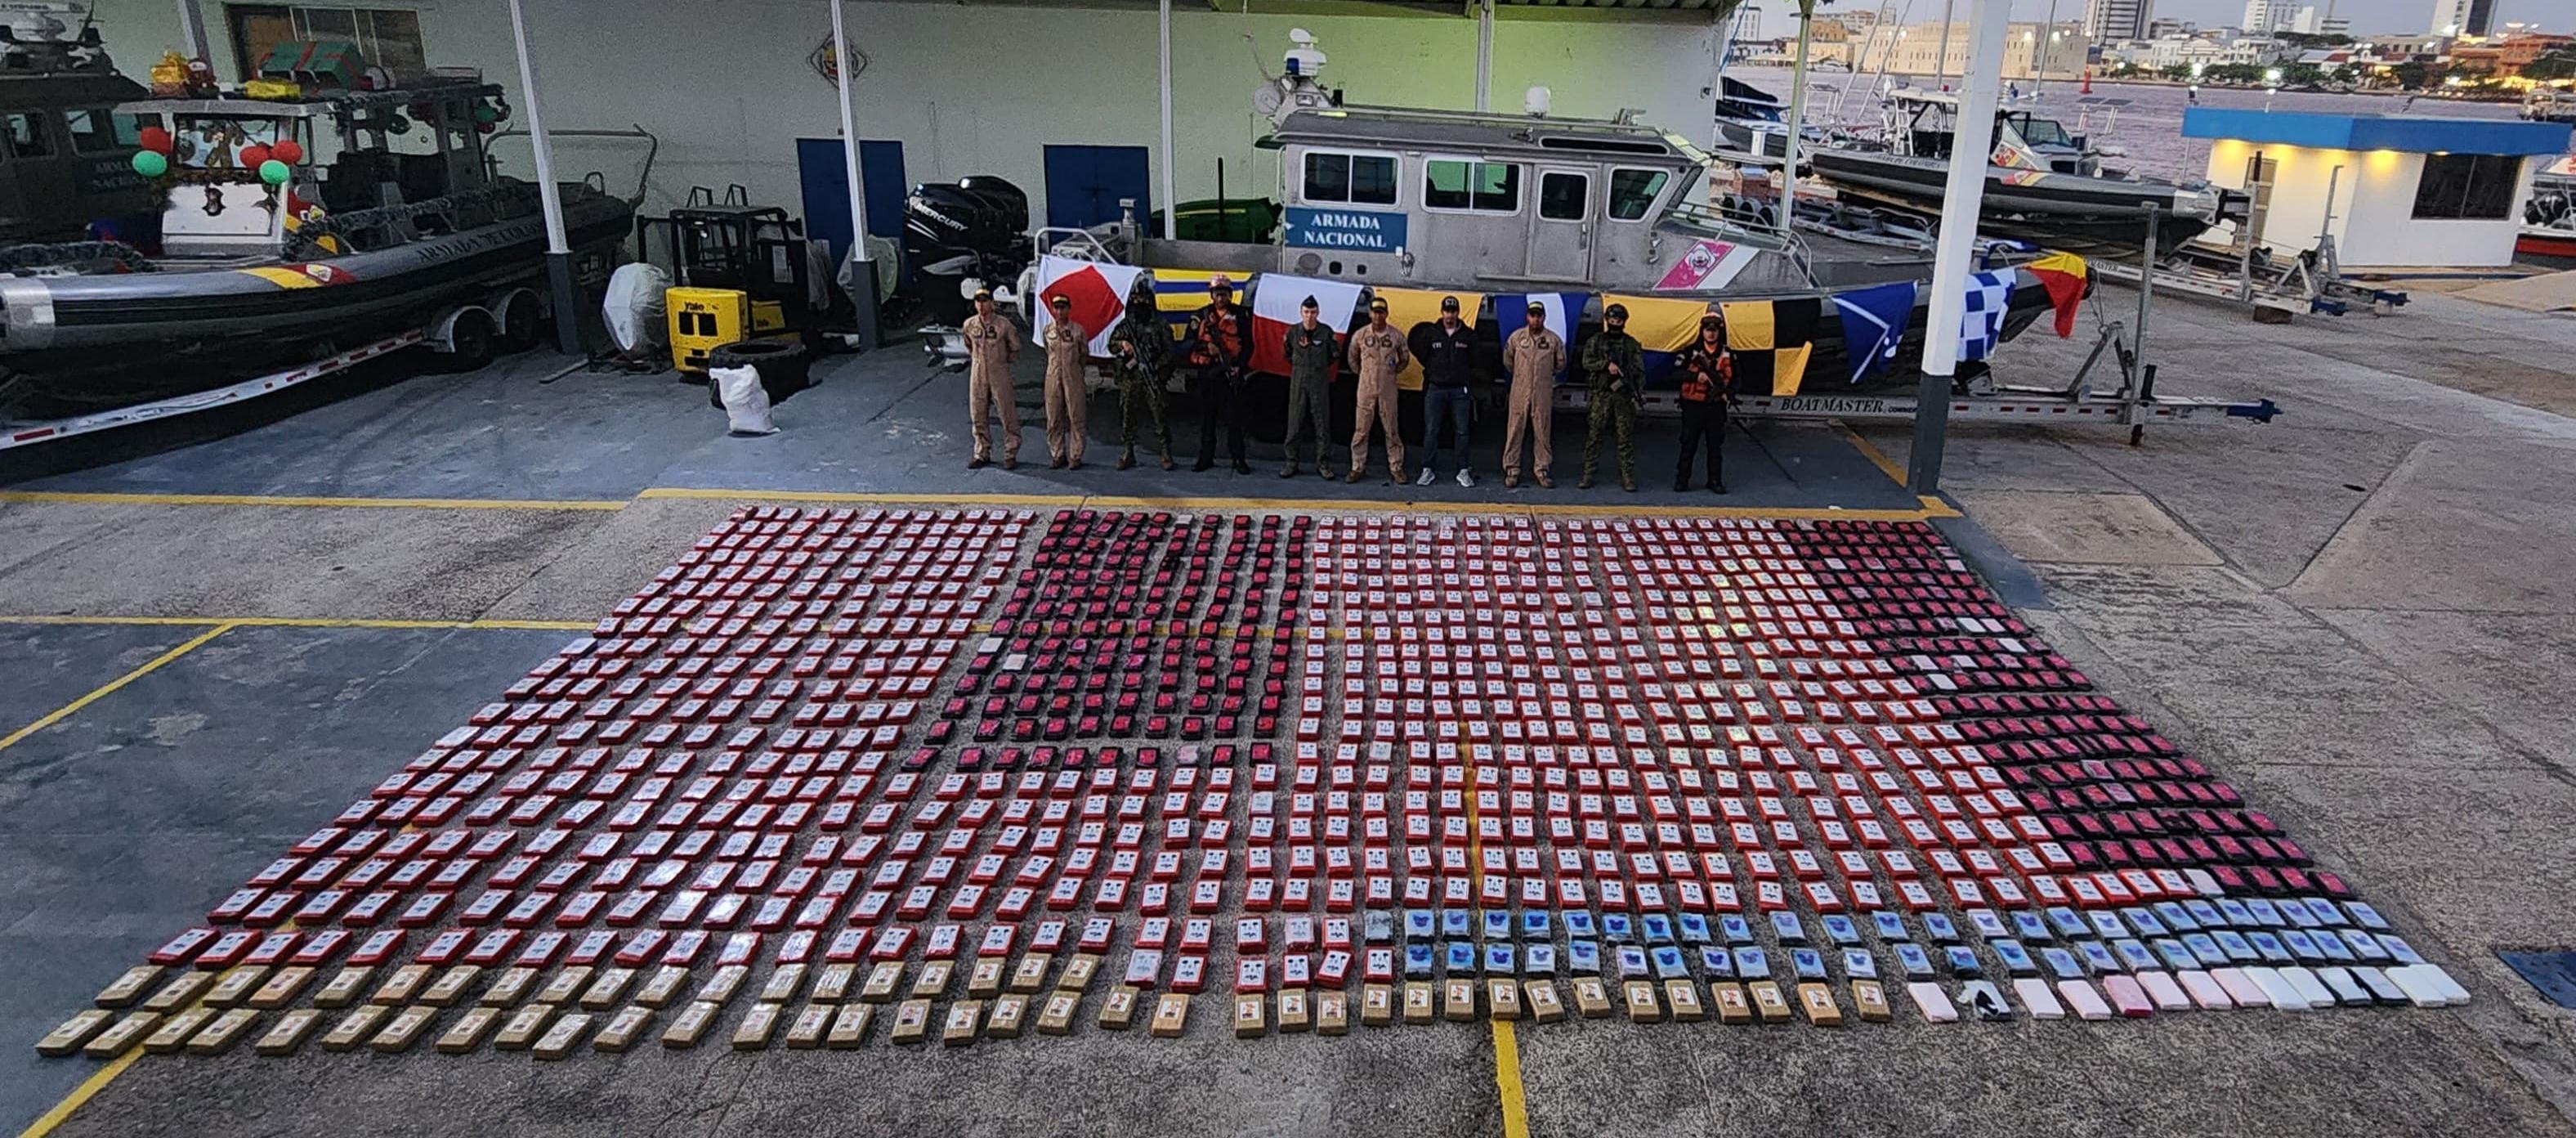 Más de una tonelada de cocaína fue incautada en zona insular de Cartagena